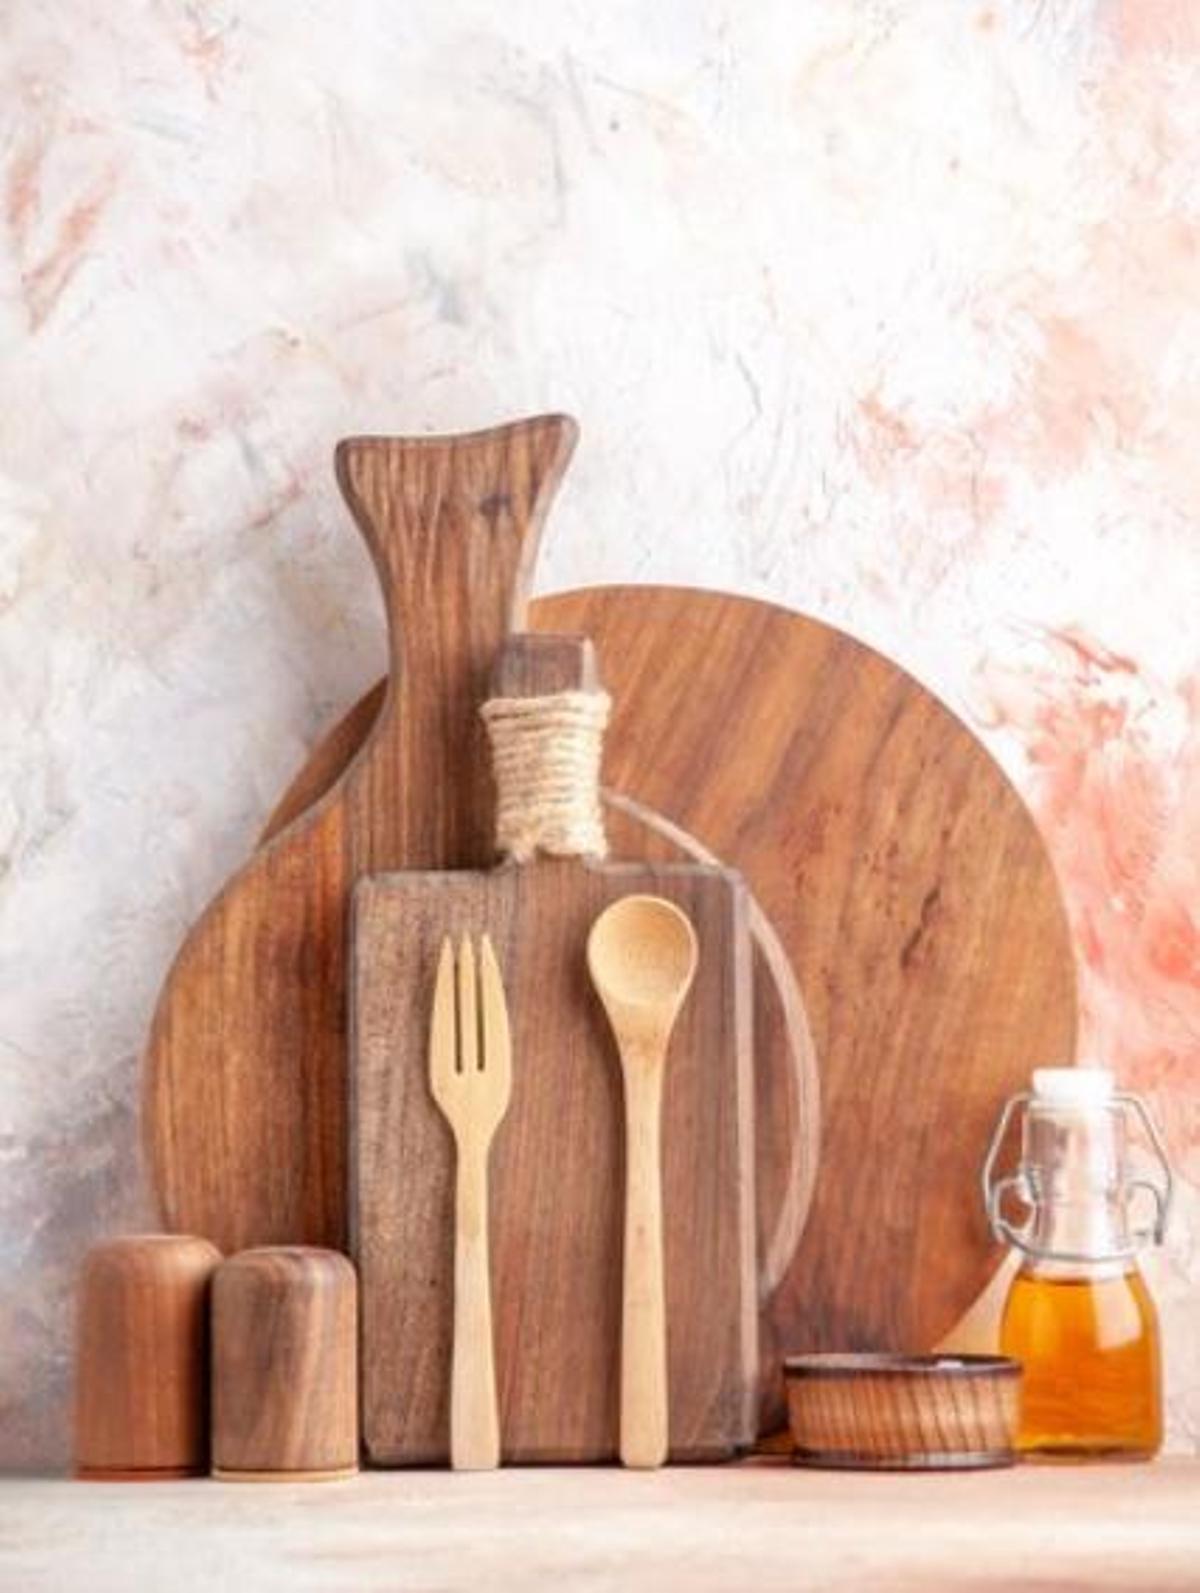 Els consells per mantenir la taula per tallar de fusta neta durant més temps